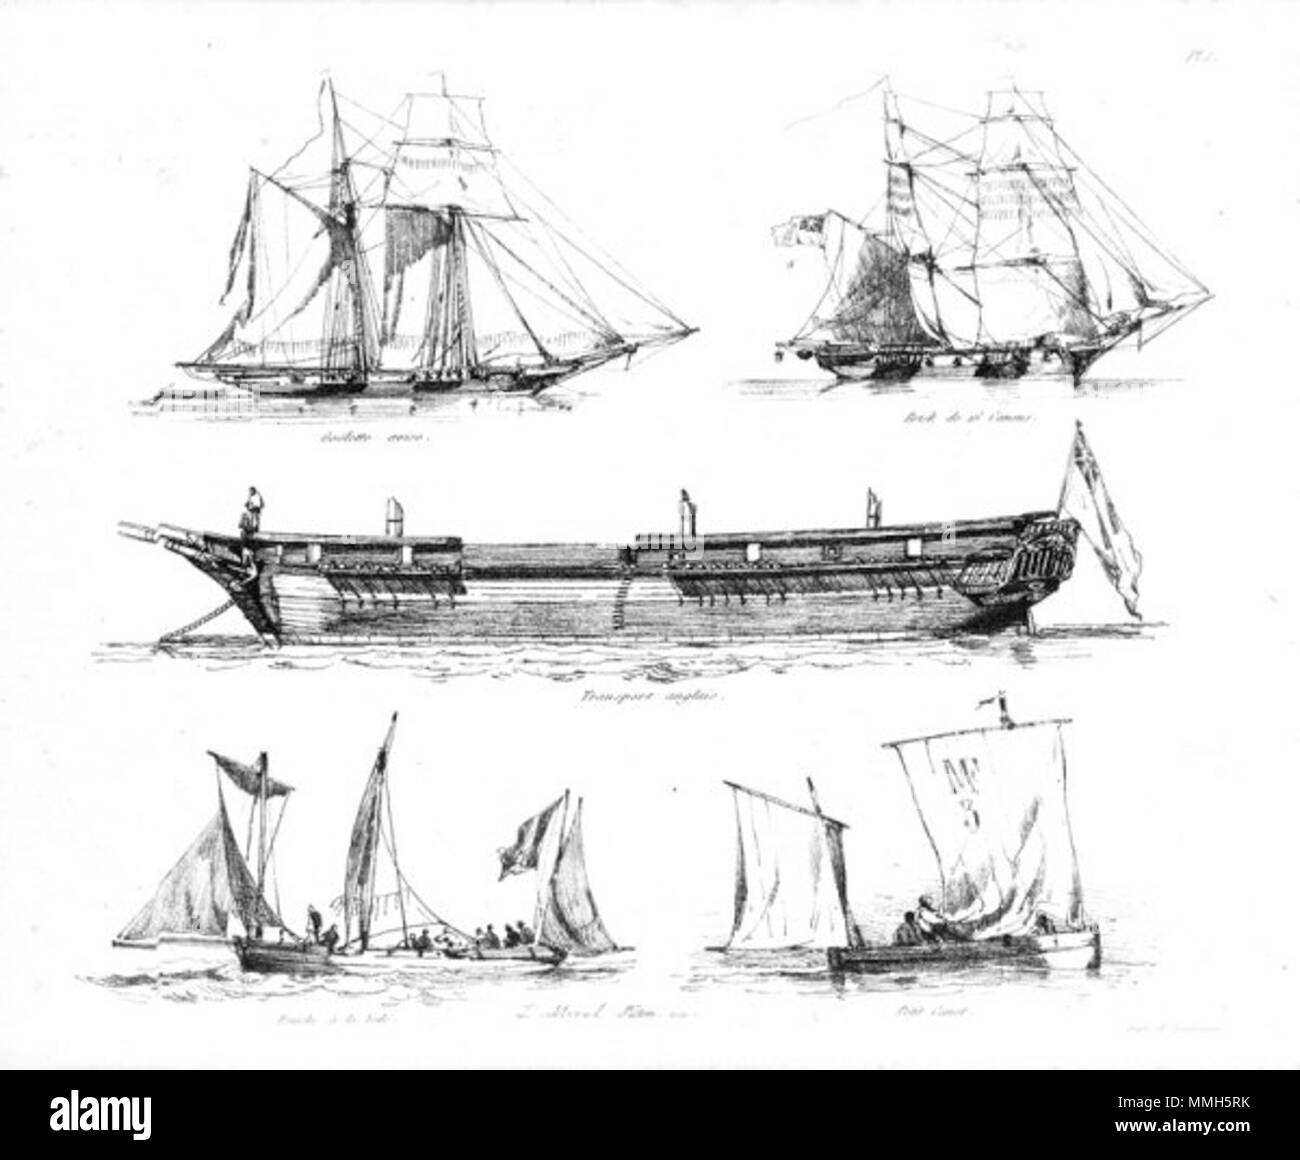 English: Despatch schooner - 16-gun brig - English troopship - barge under  sail - small sailing boat Français : Goelette aviso - Brick de 16 canons -  Transport anglais - Péniche